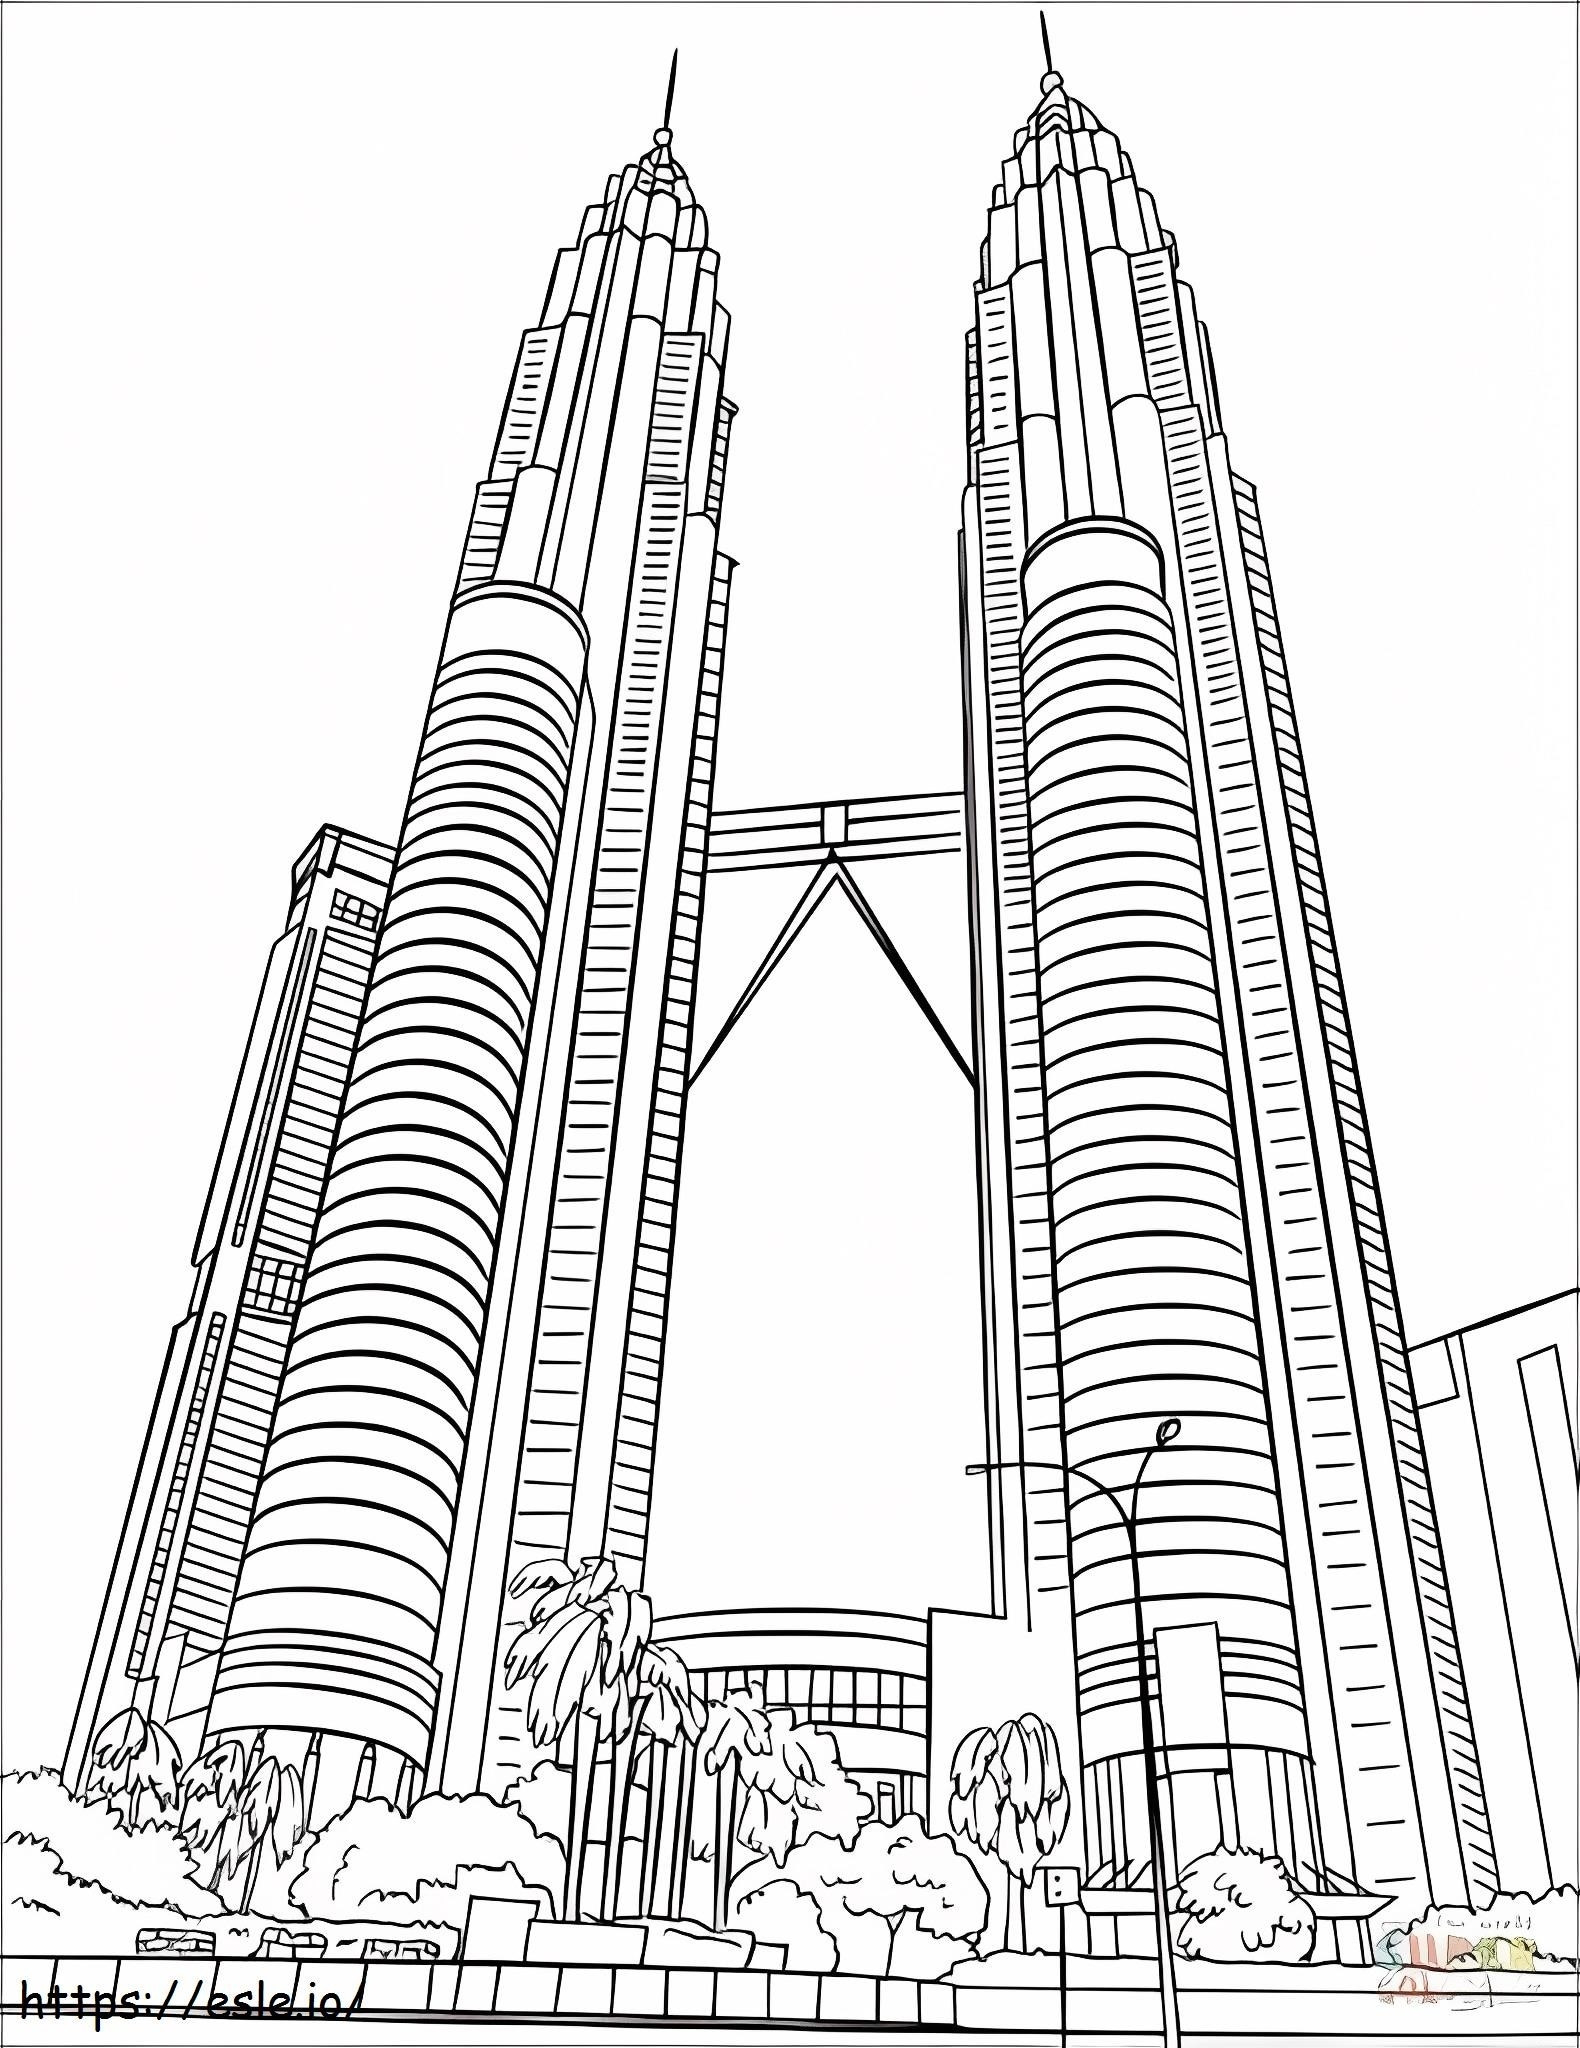 Bliźniacze wieże Petronas kolorowanka